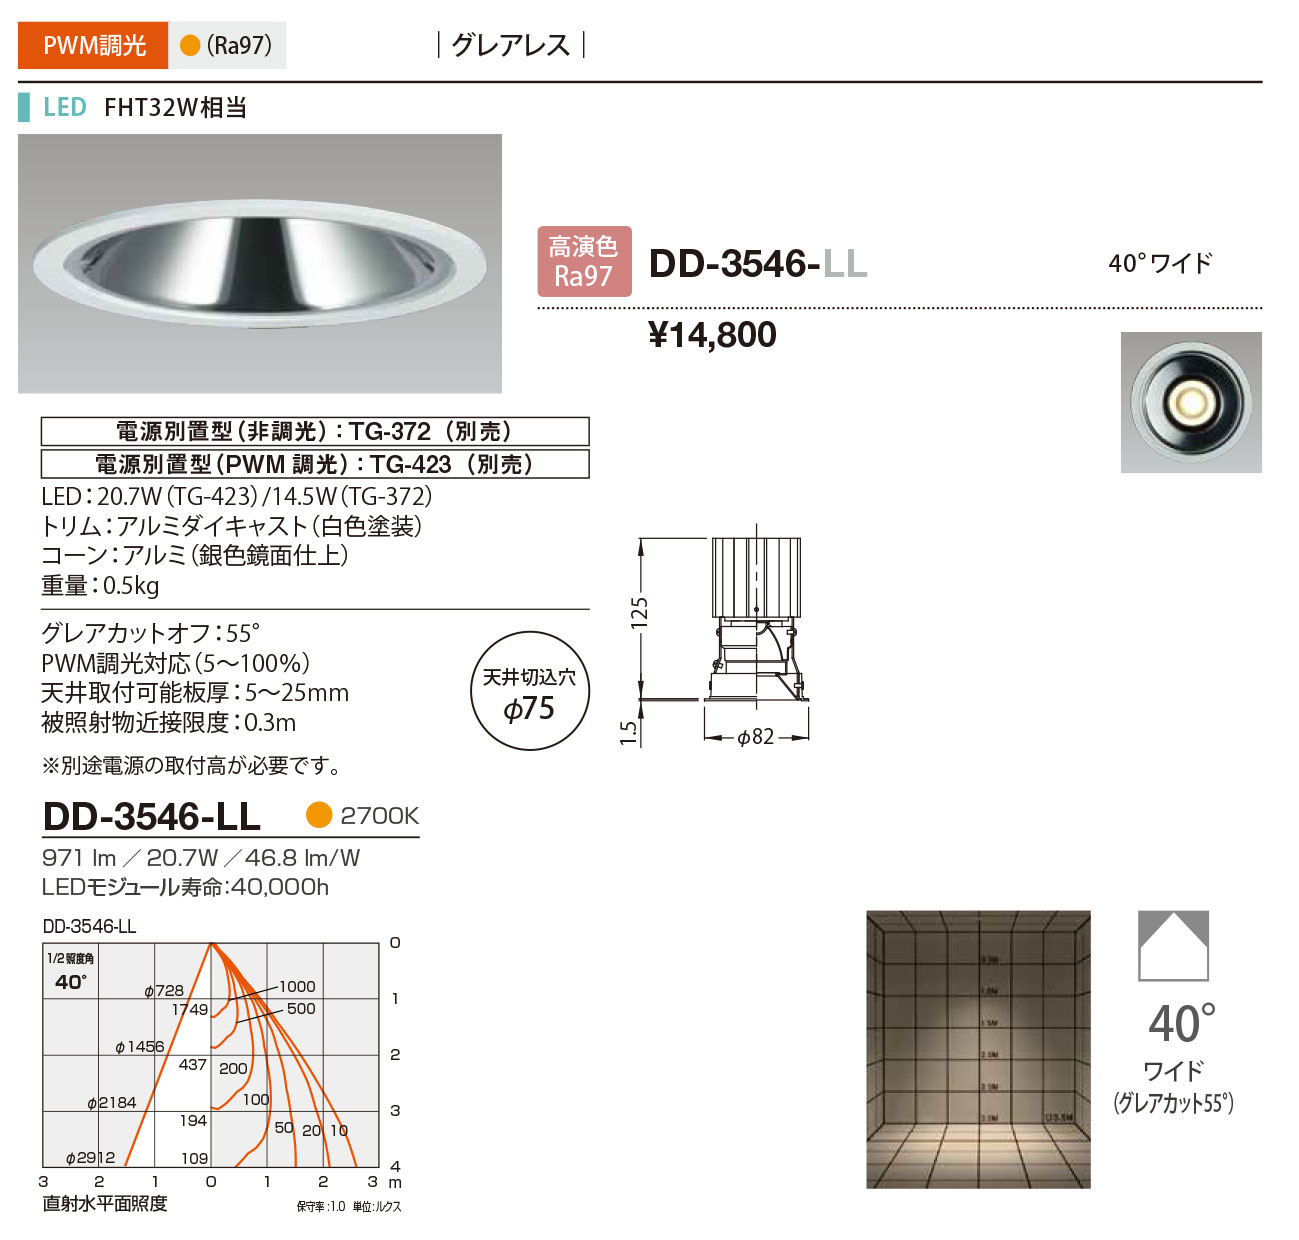 DD-3546-LL RcƖ _ECg F 75 LED dF  40x